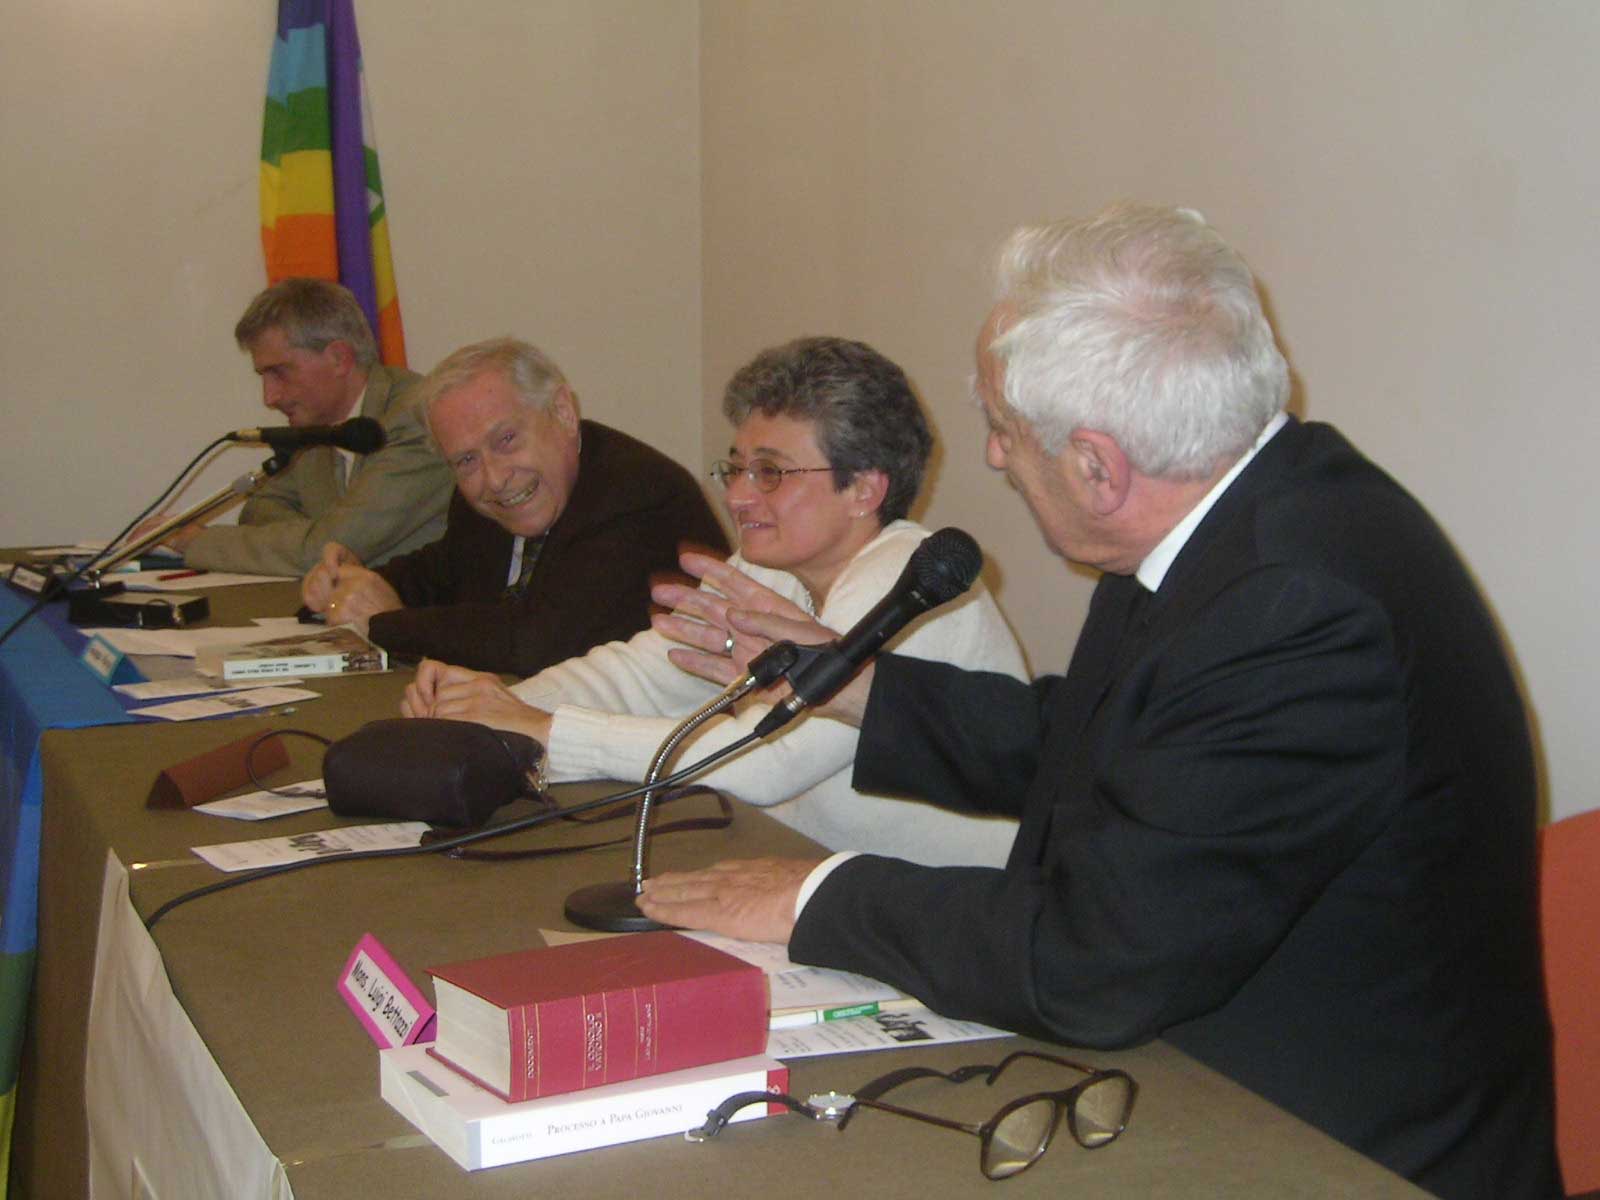 22 ottobre 2005: Convegno A 40 anni dalla chiusura del Concilio Vaticano II